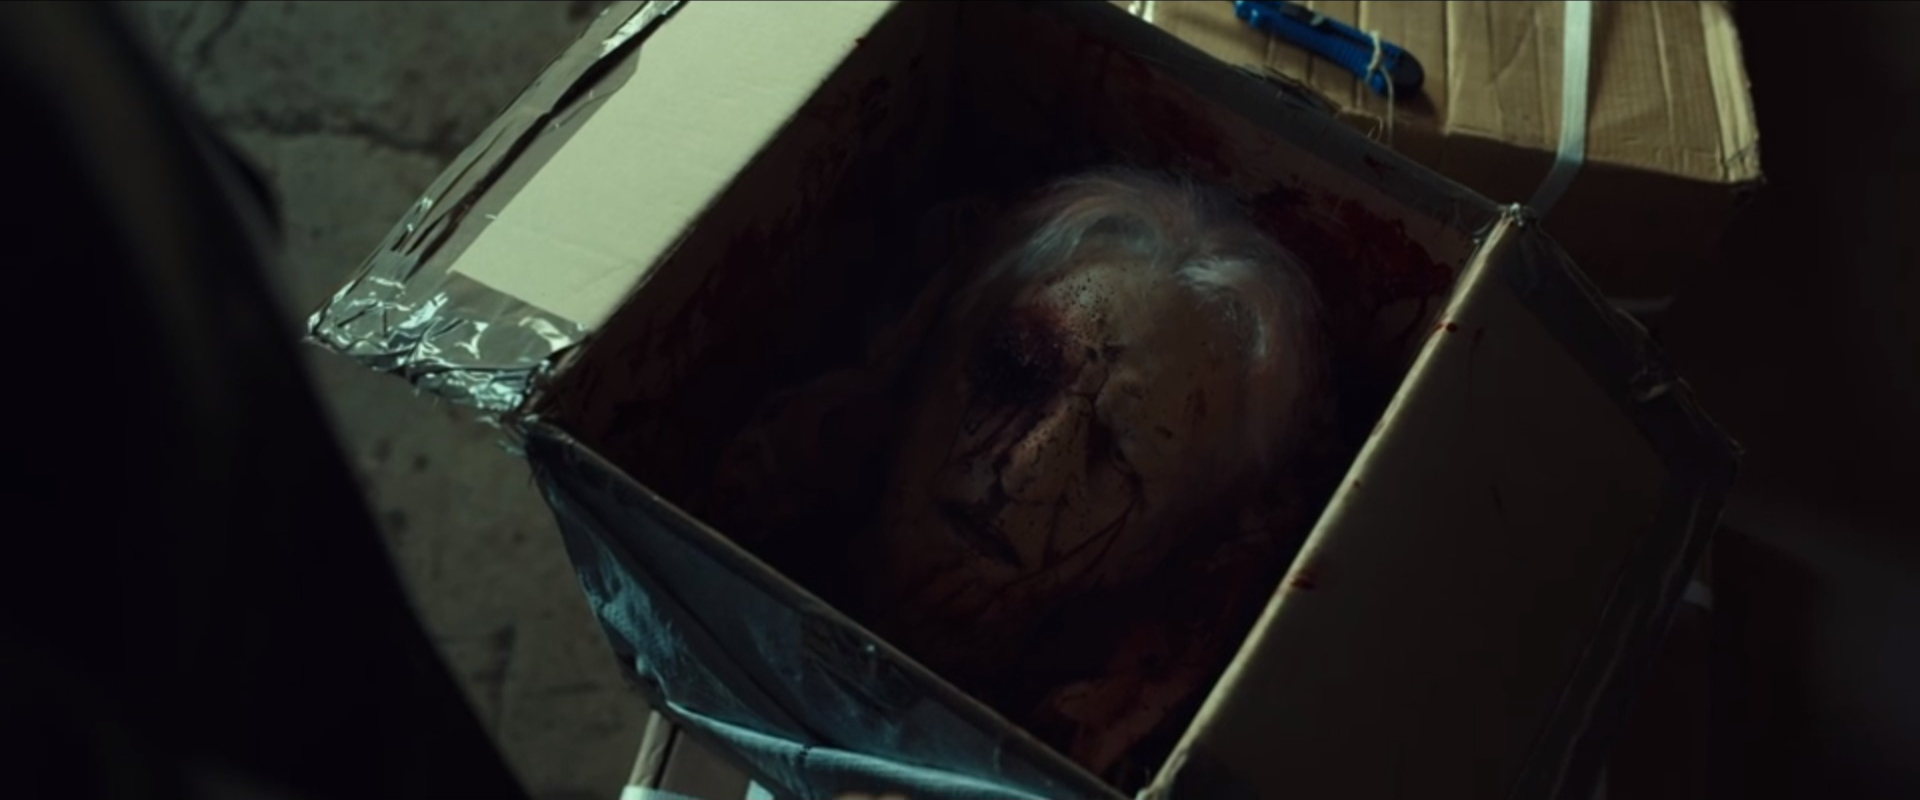 L'immortale: la testa decapitata di Don Aniello Pastore in una scatola